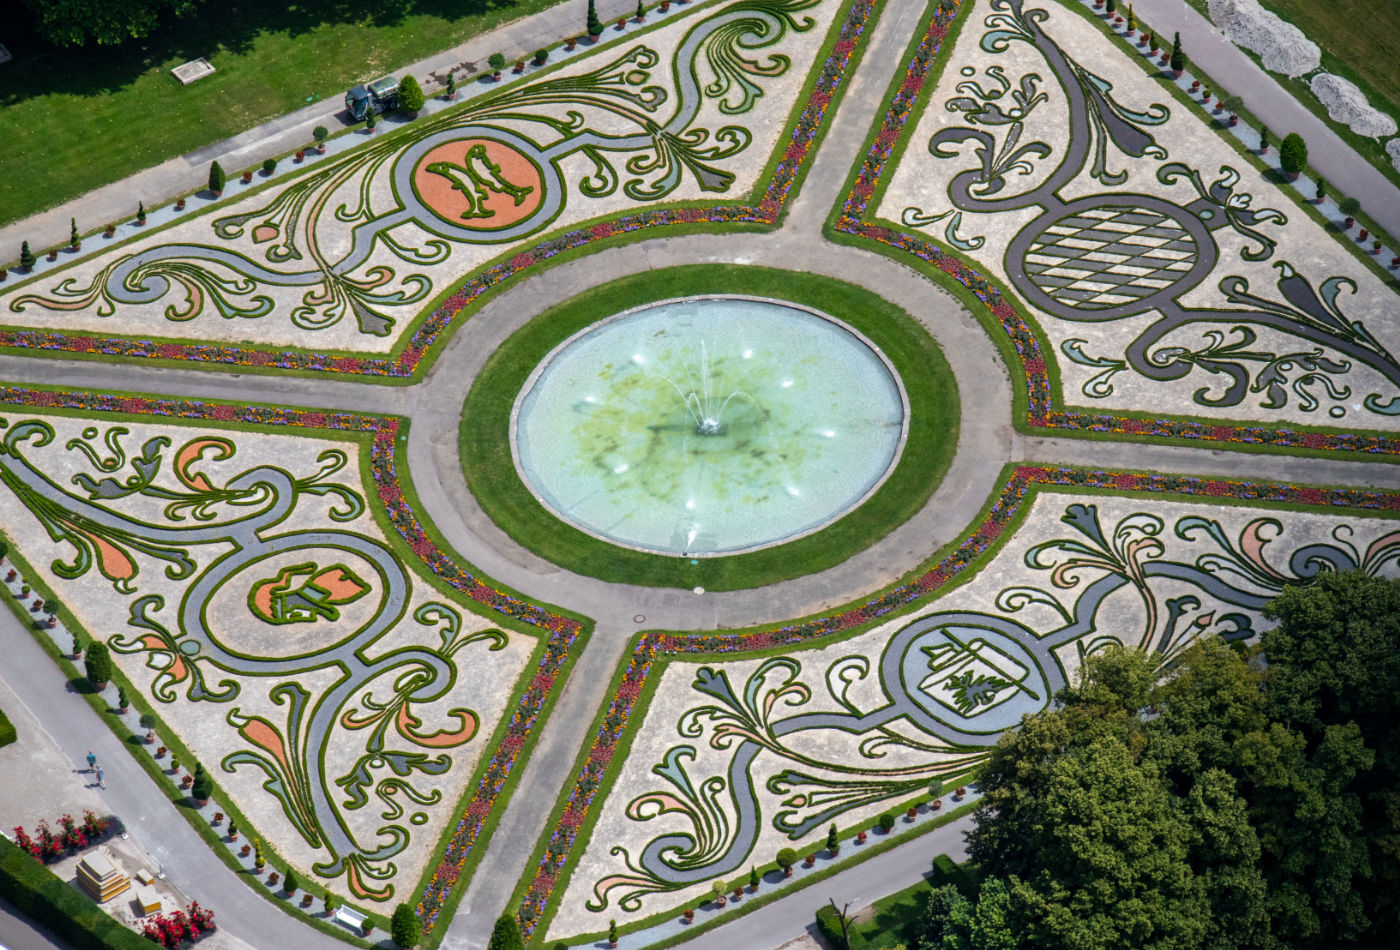 Detailansicht des Broderie-Gartens im Blühenden Barock